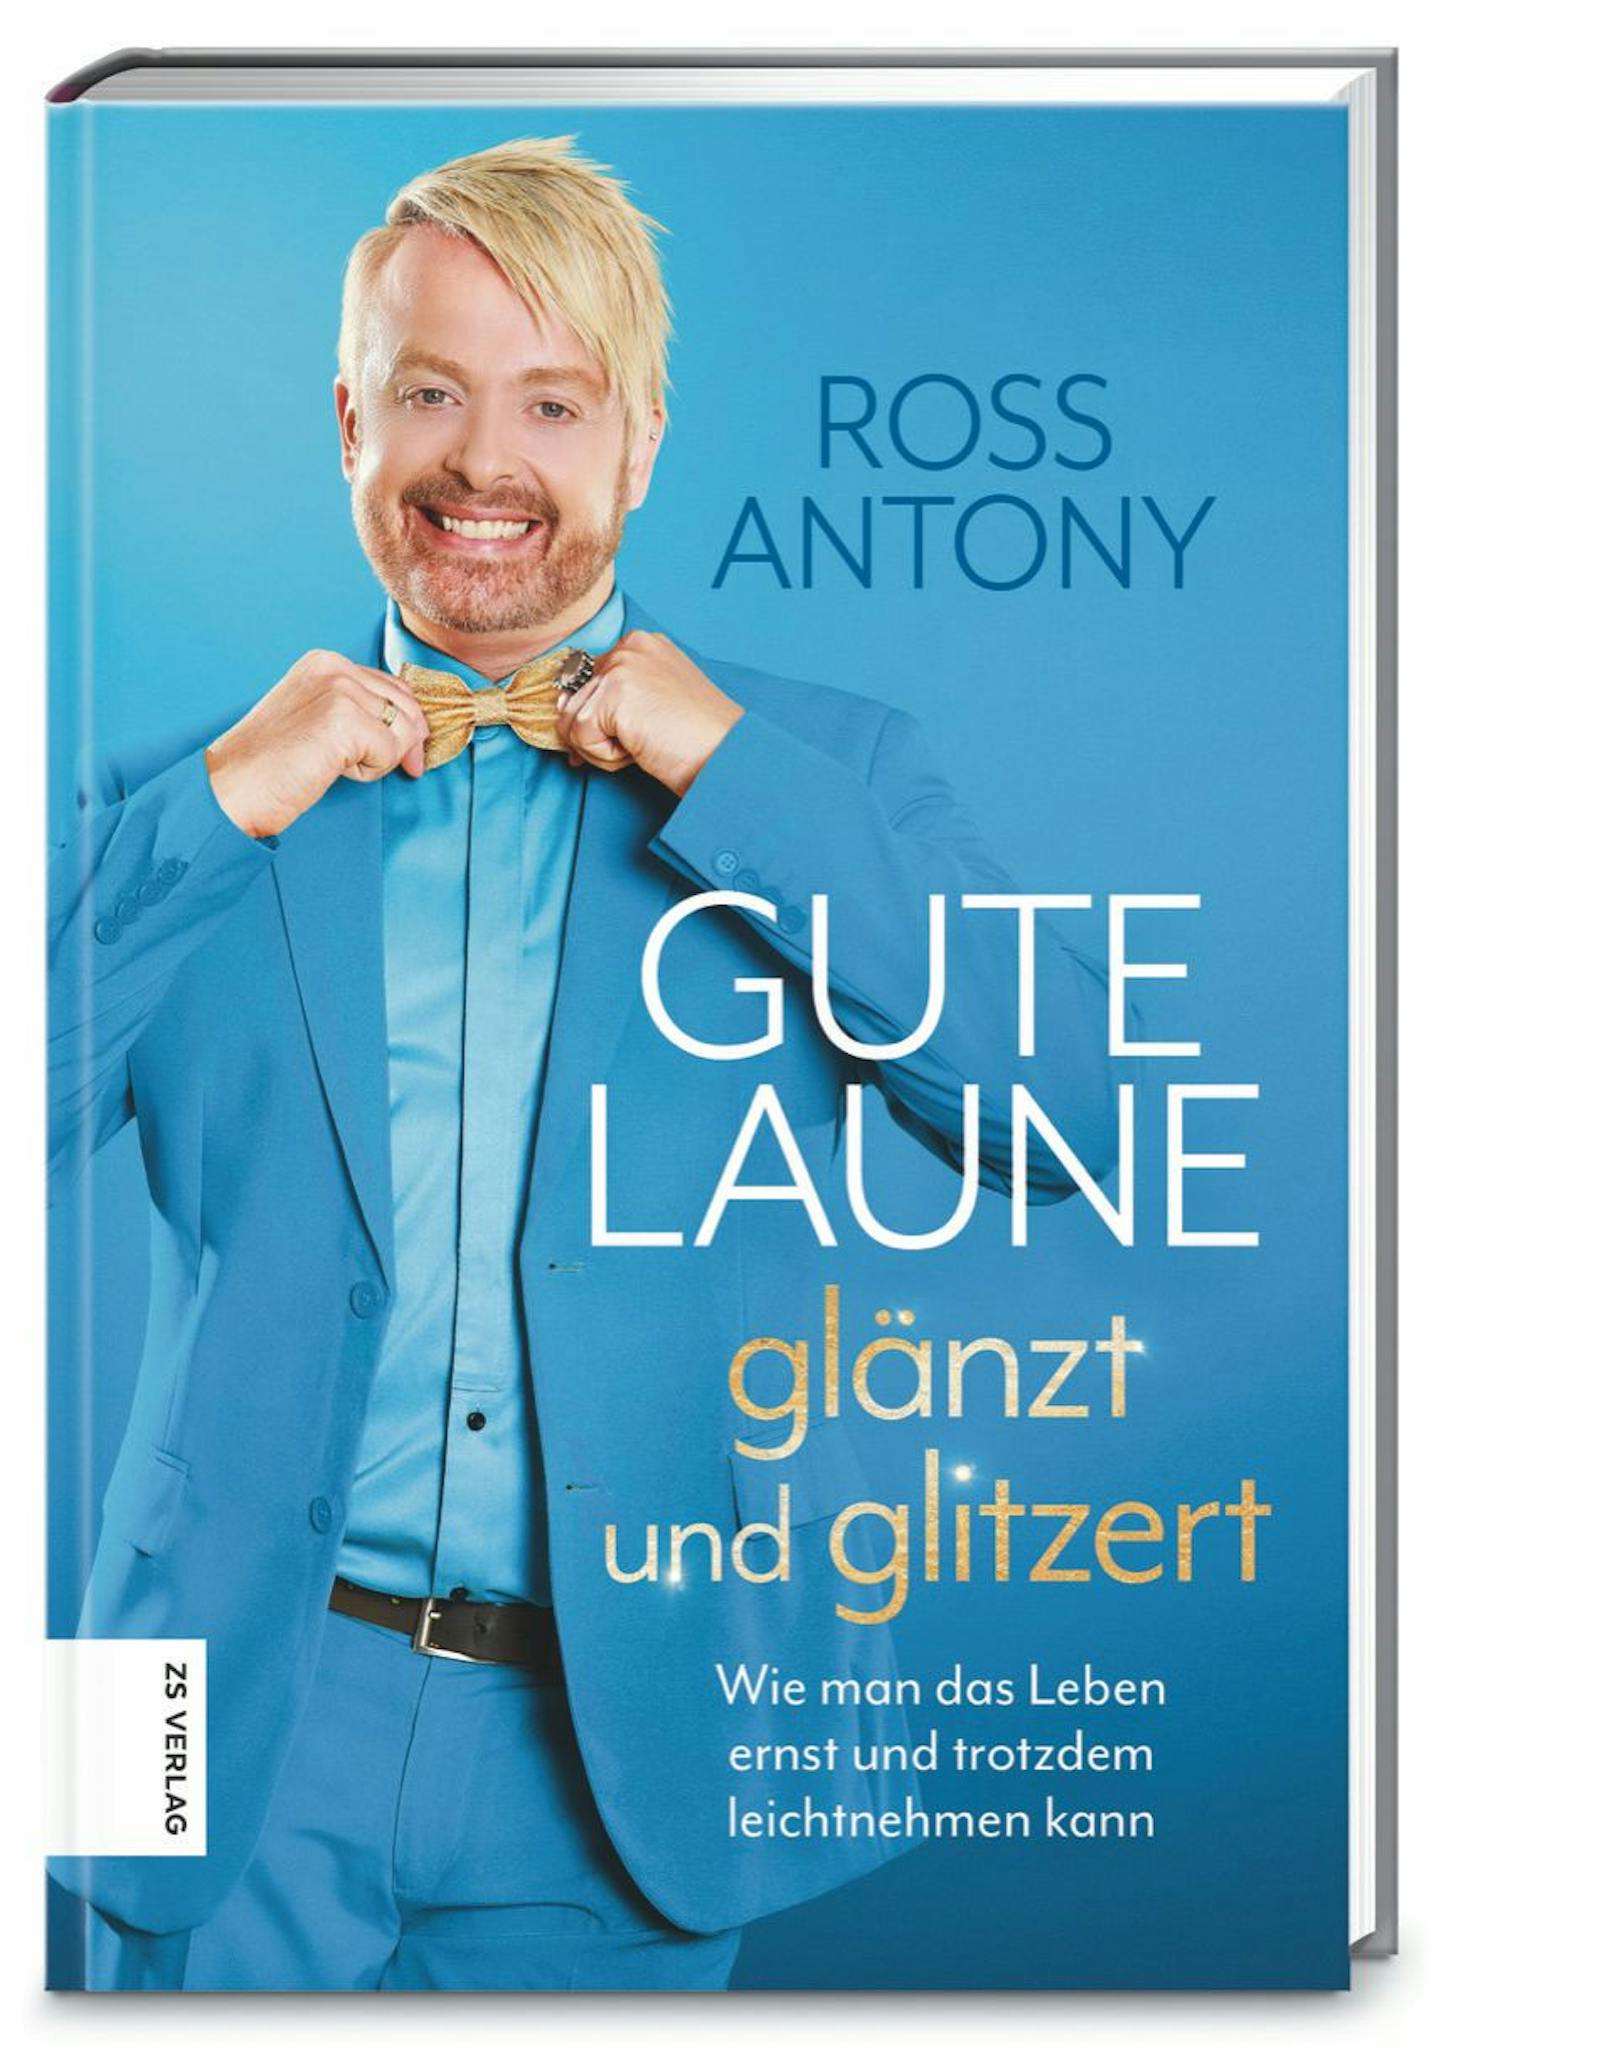 Sein Ratgeber "Gute Laune glänzt und glitzert" ist im ZS Verlag erschienen.